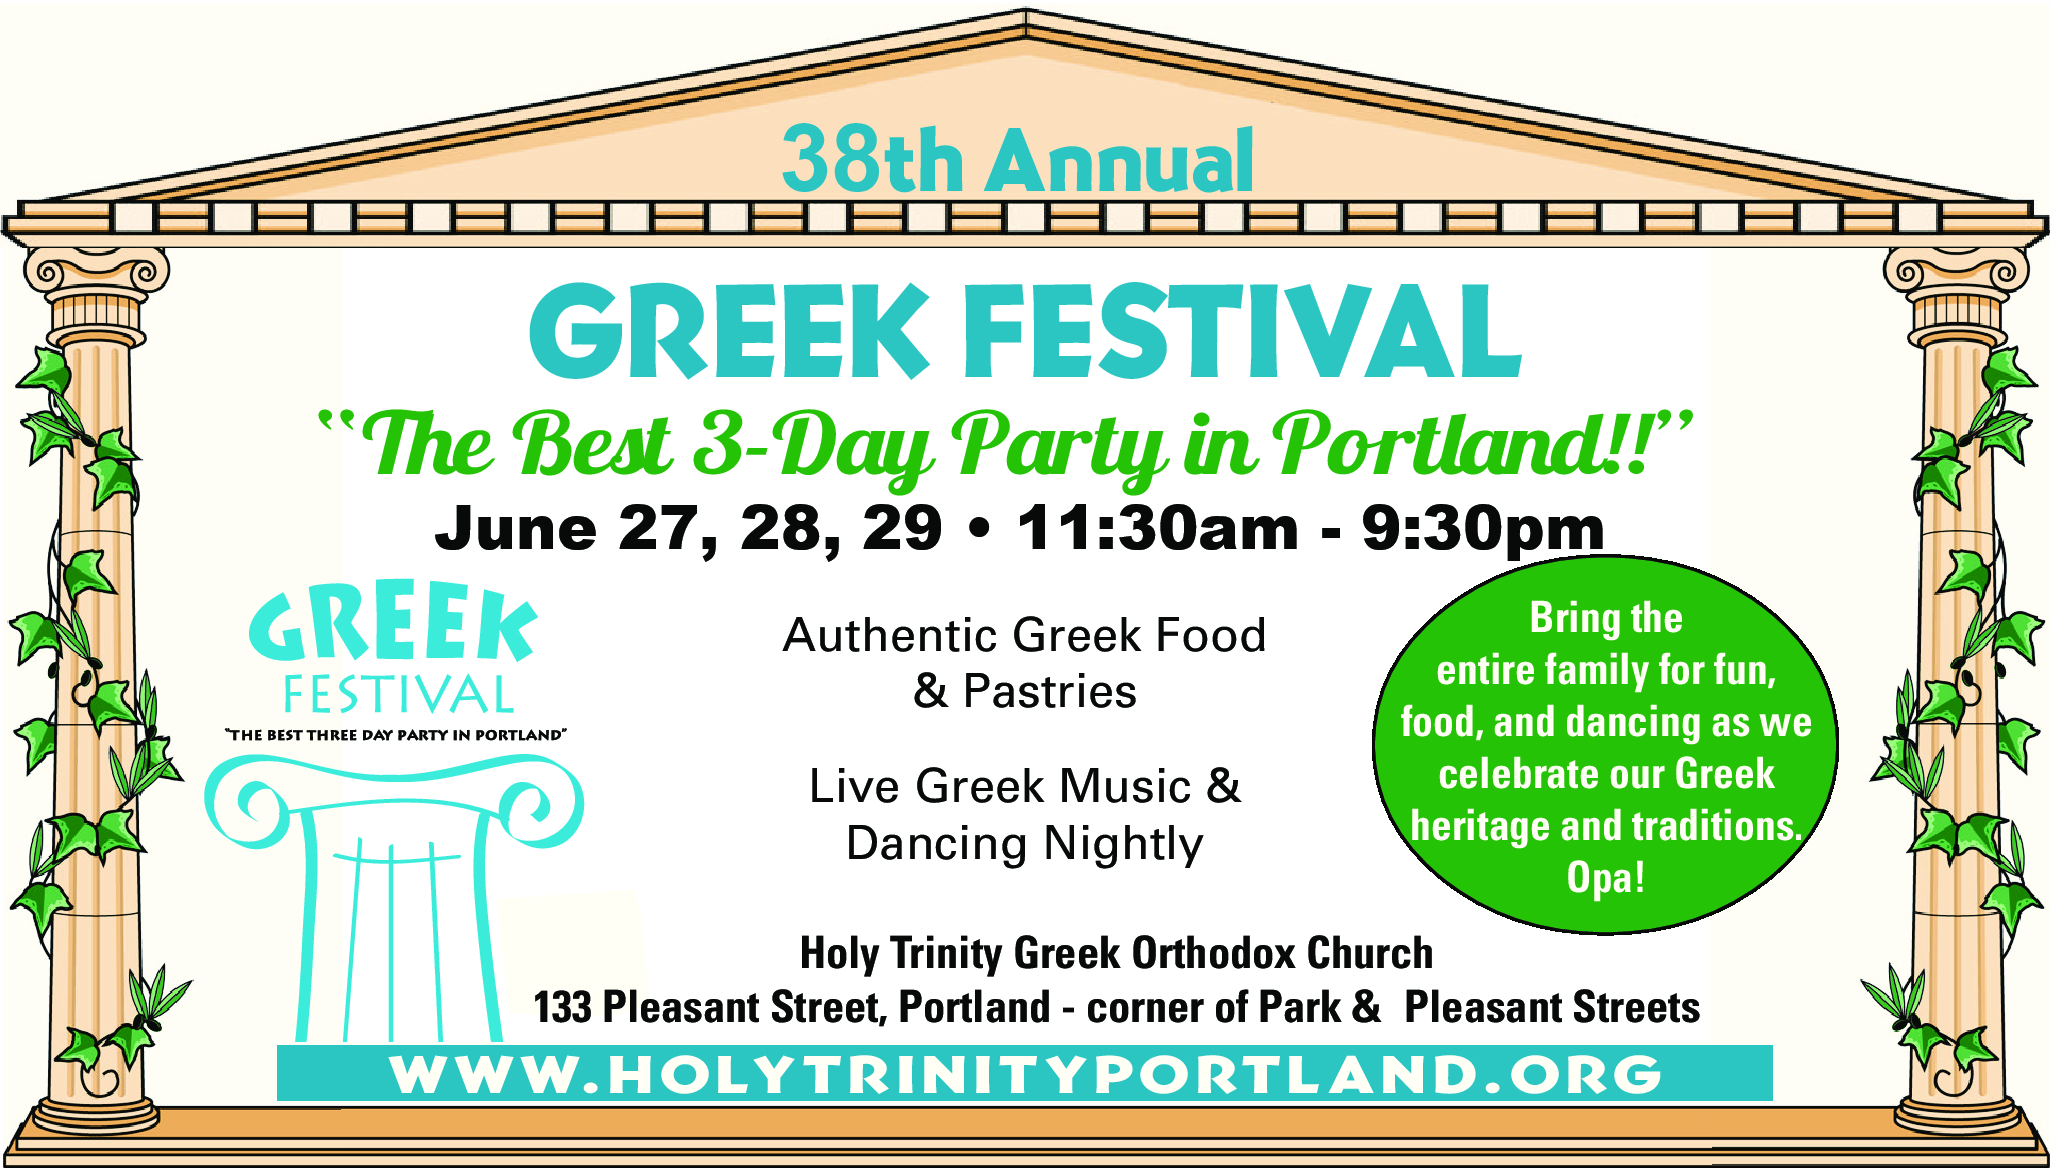 Portland Maine Greek Festival at Holy Trinity Greek Orthodox Church